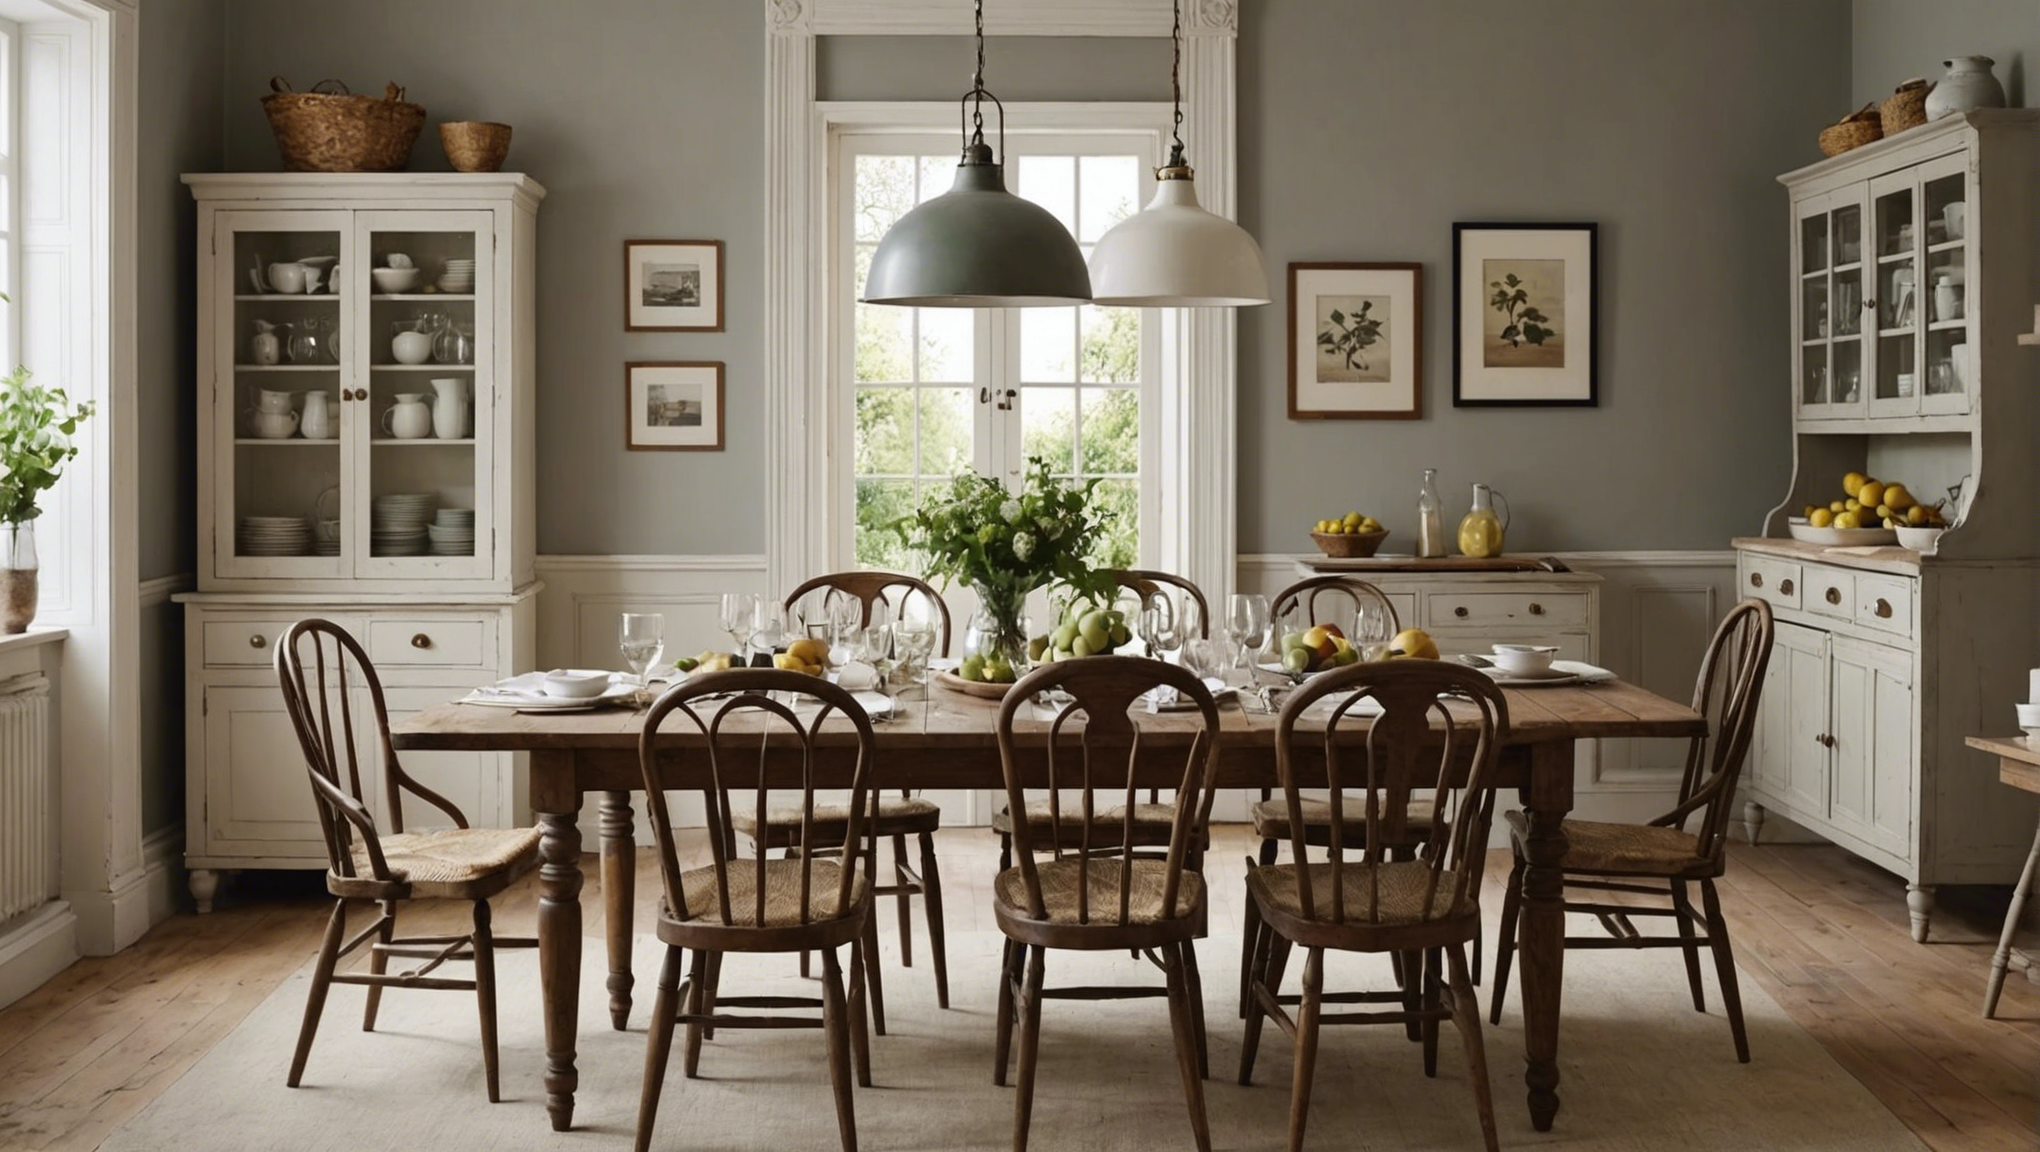 découvrez des conseils pratiques pour apporter une touche vintage à votre salle à manger et créer une ambiance rétro-chic à votre décoration intérieure.